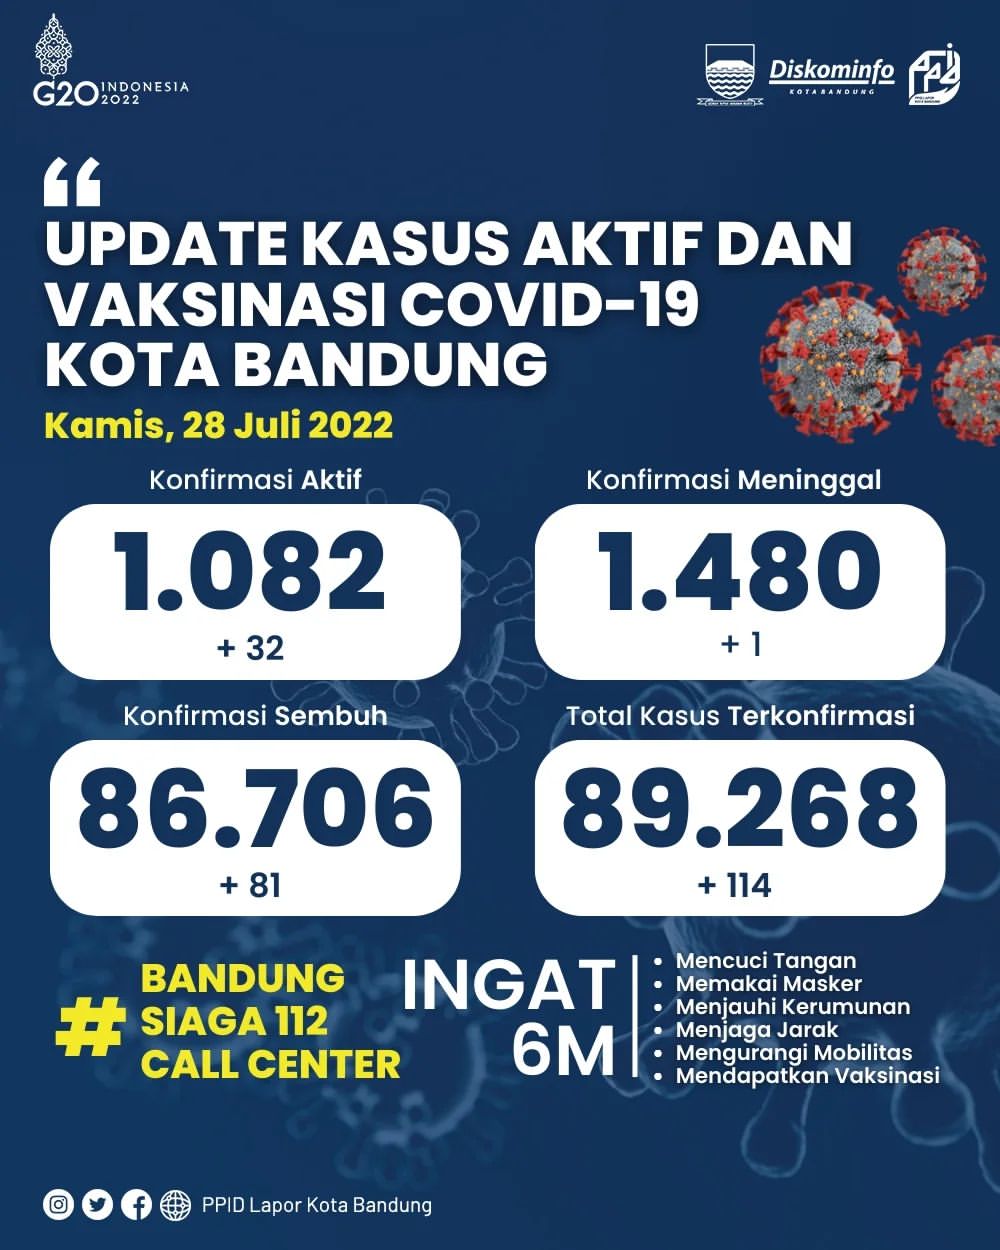 UPDATE STATISTIK COVID-19 DI KOTA BANDUNG PER TANGGAL 28 JULI 2022